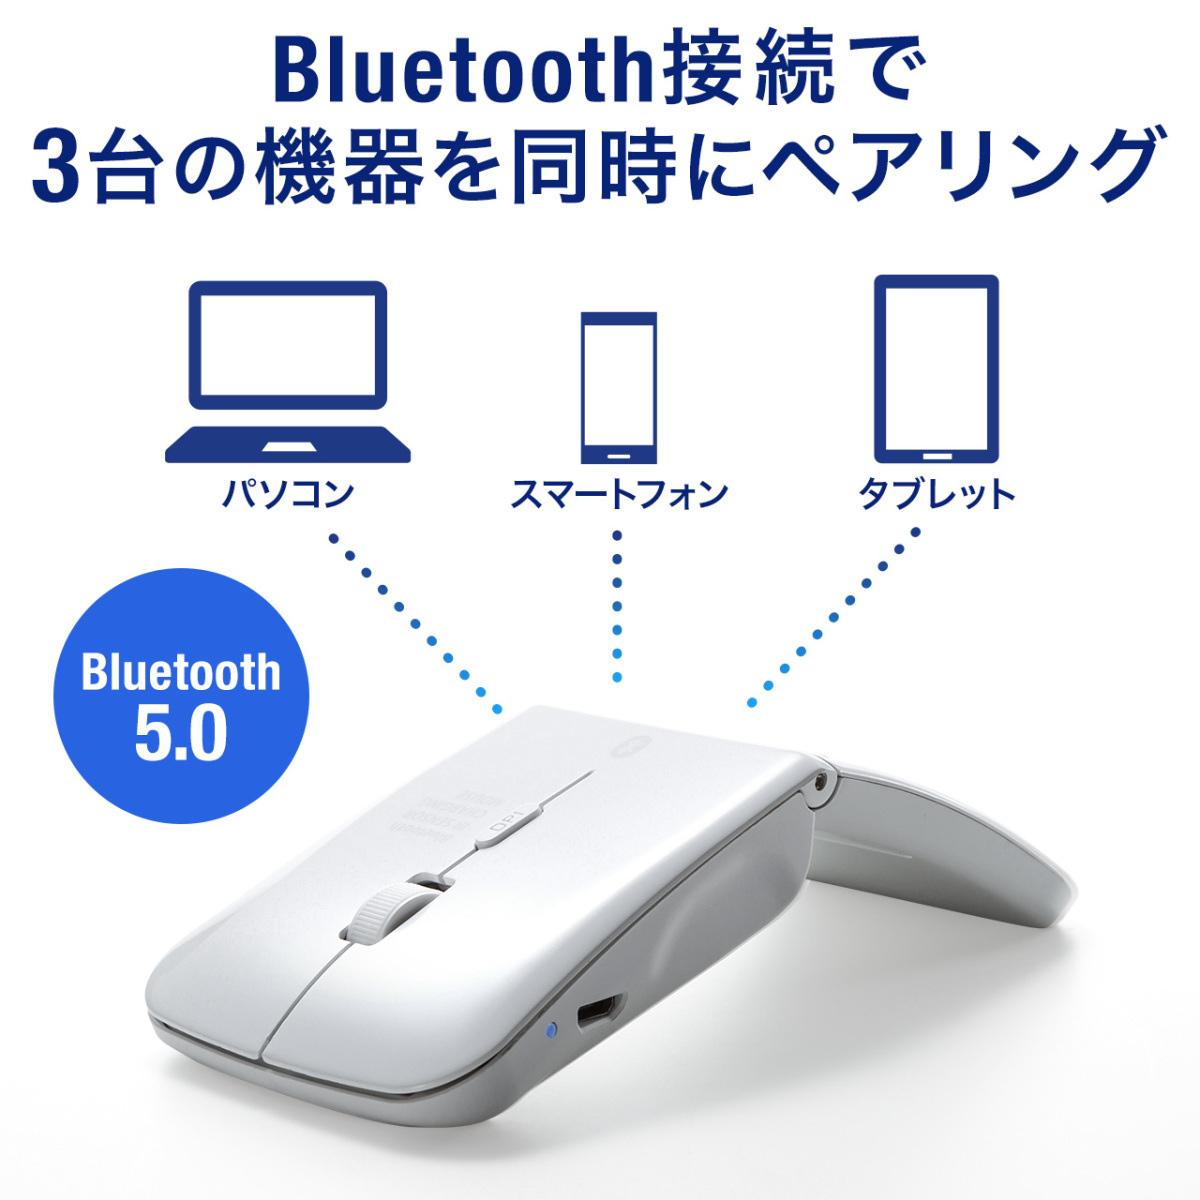 マウス ワイヤレスマウス 無線 ブルートゥース 充電式 マルチペアリング 折りたたみ 3ボタン Bluetooth 400-MA120W